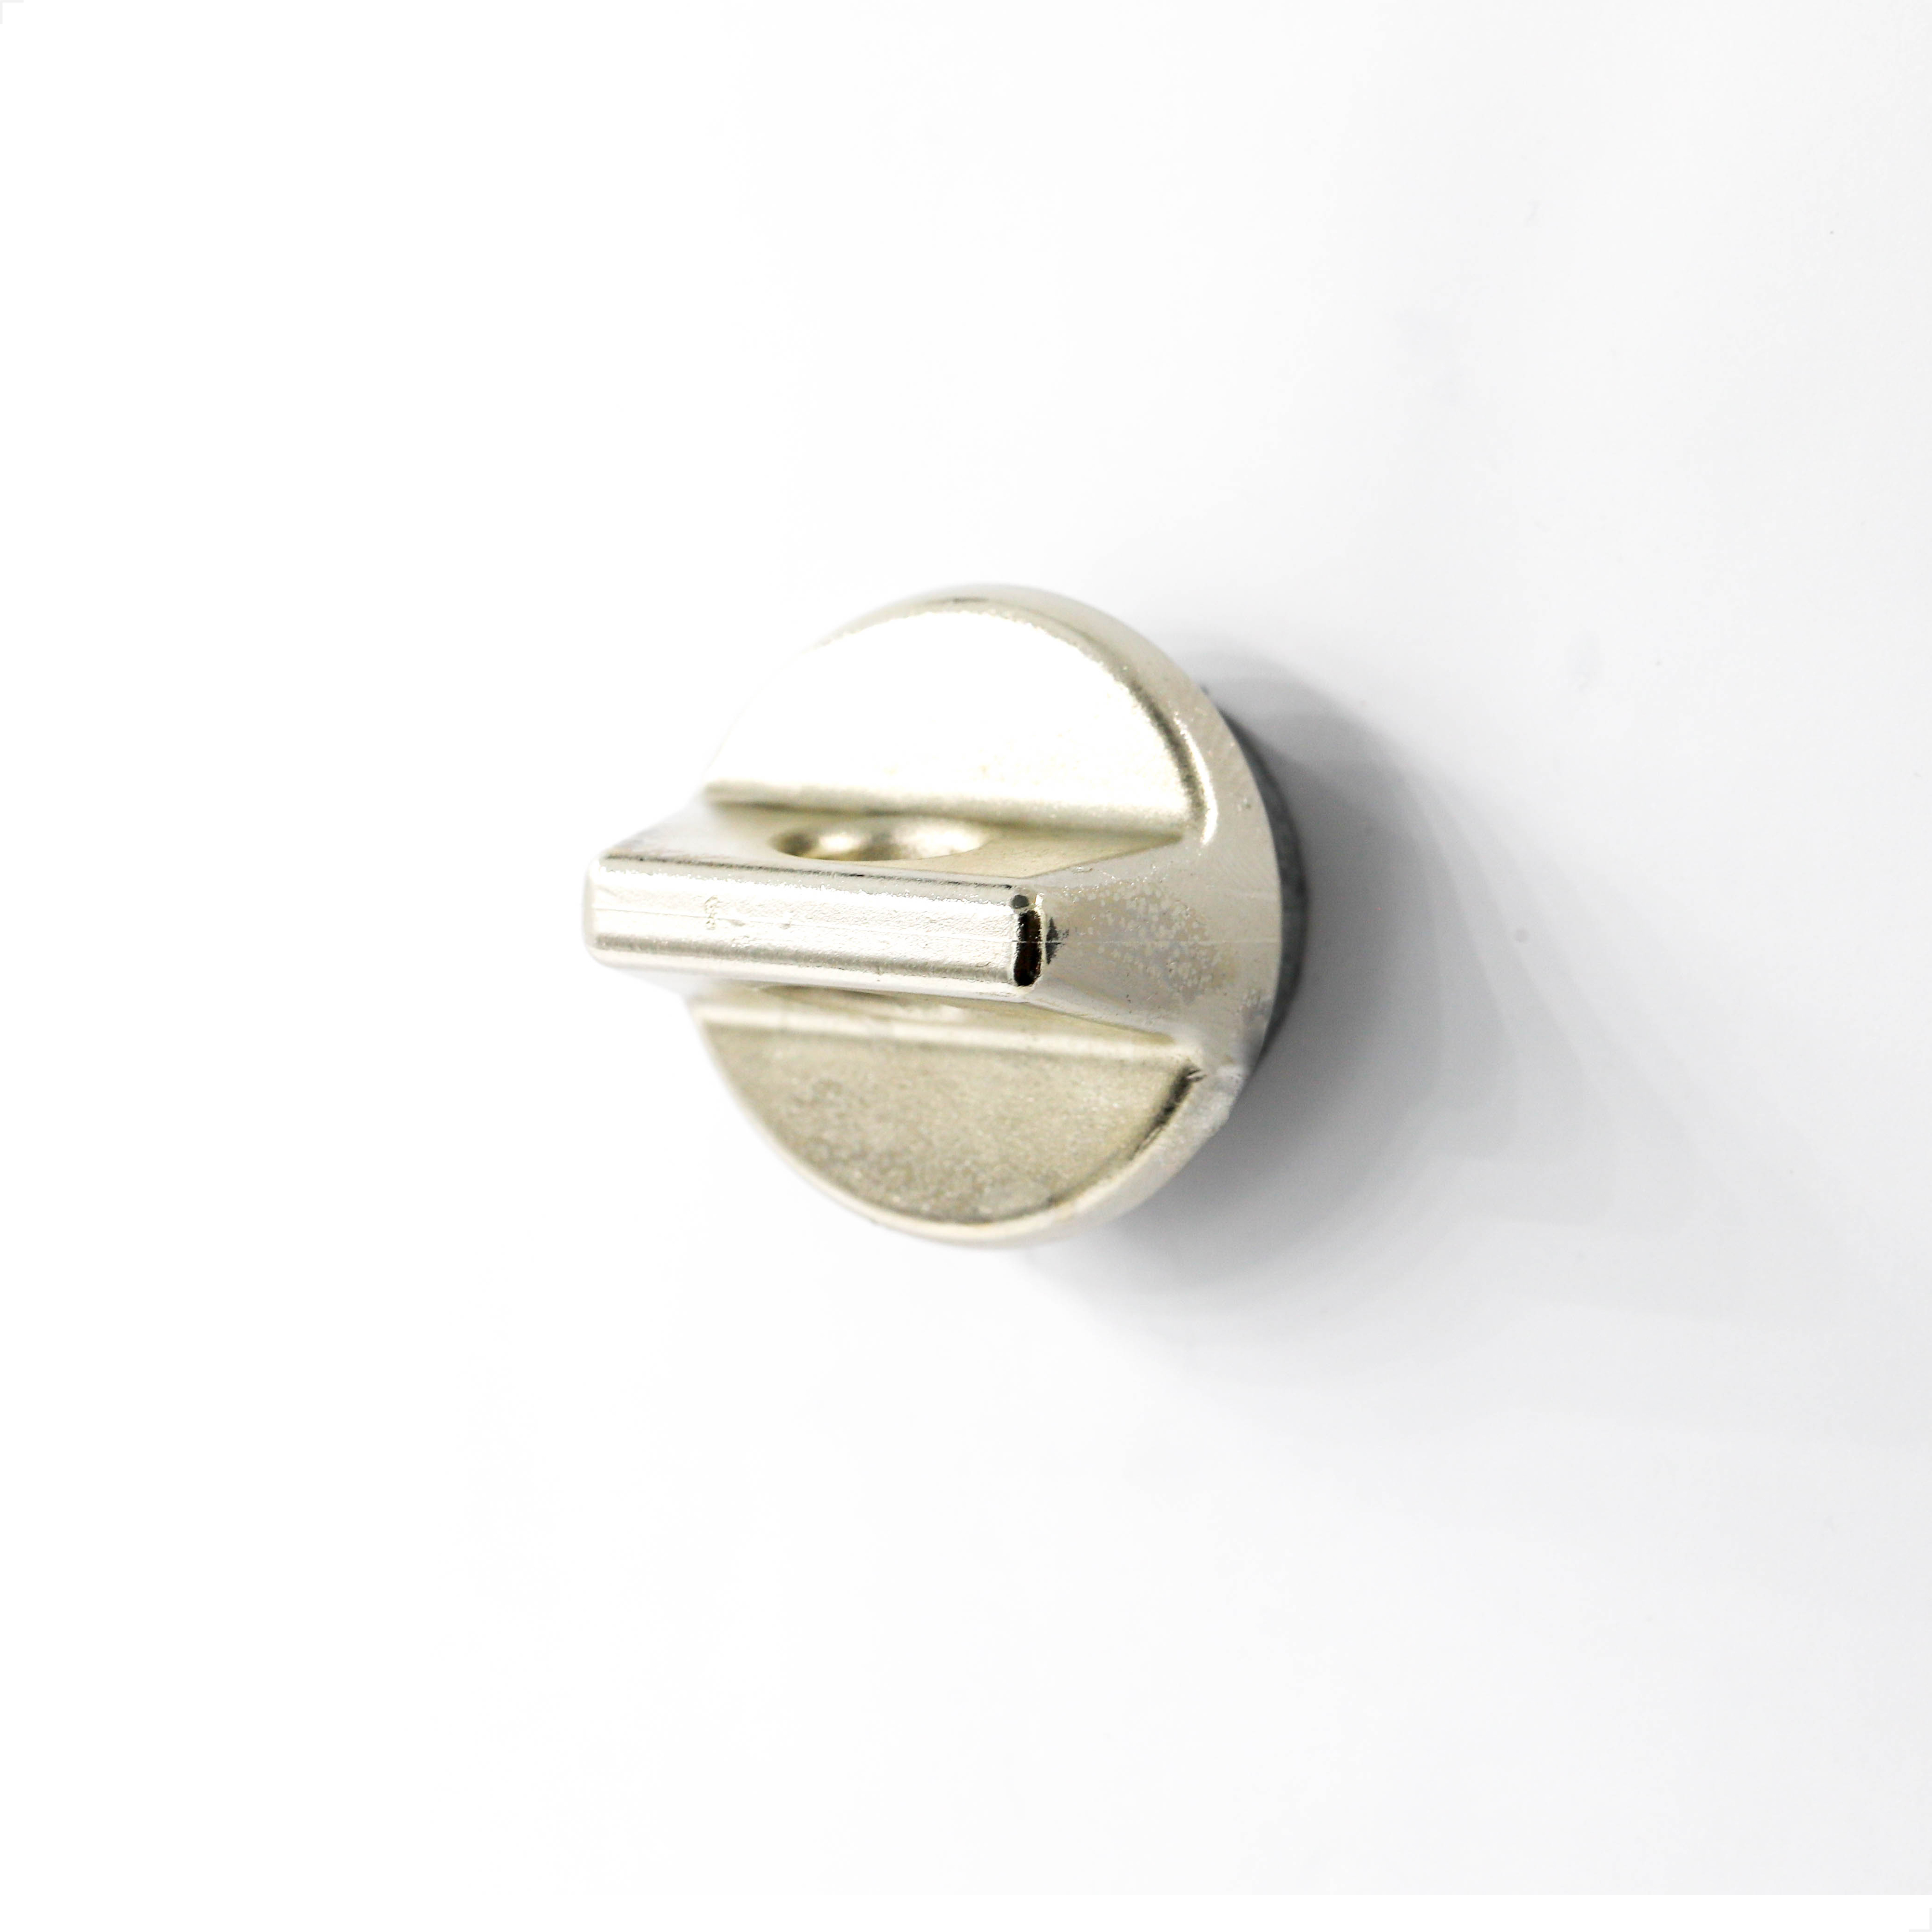 Locker lock/ Basis-sash lock V4Q 